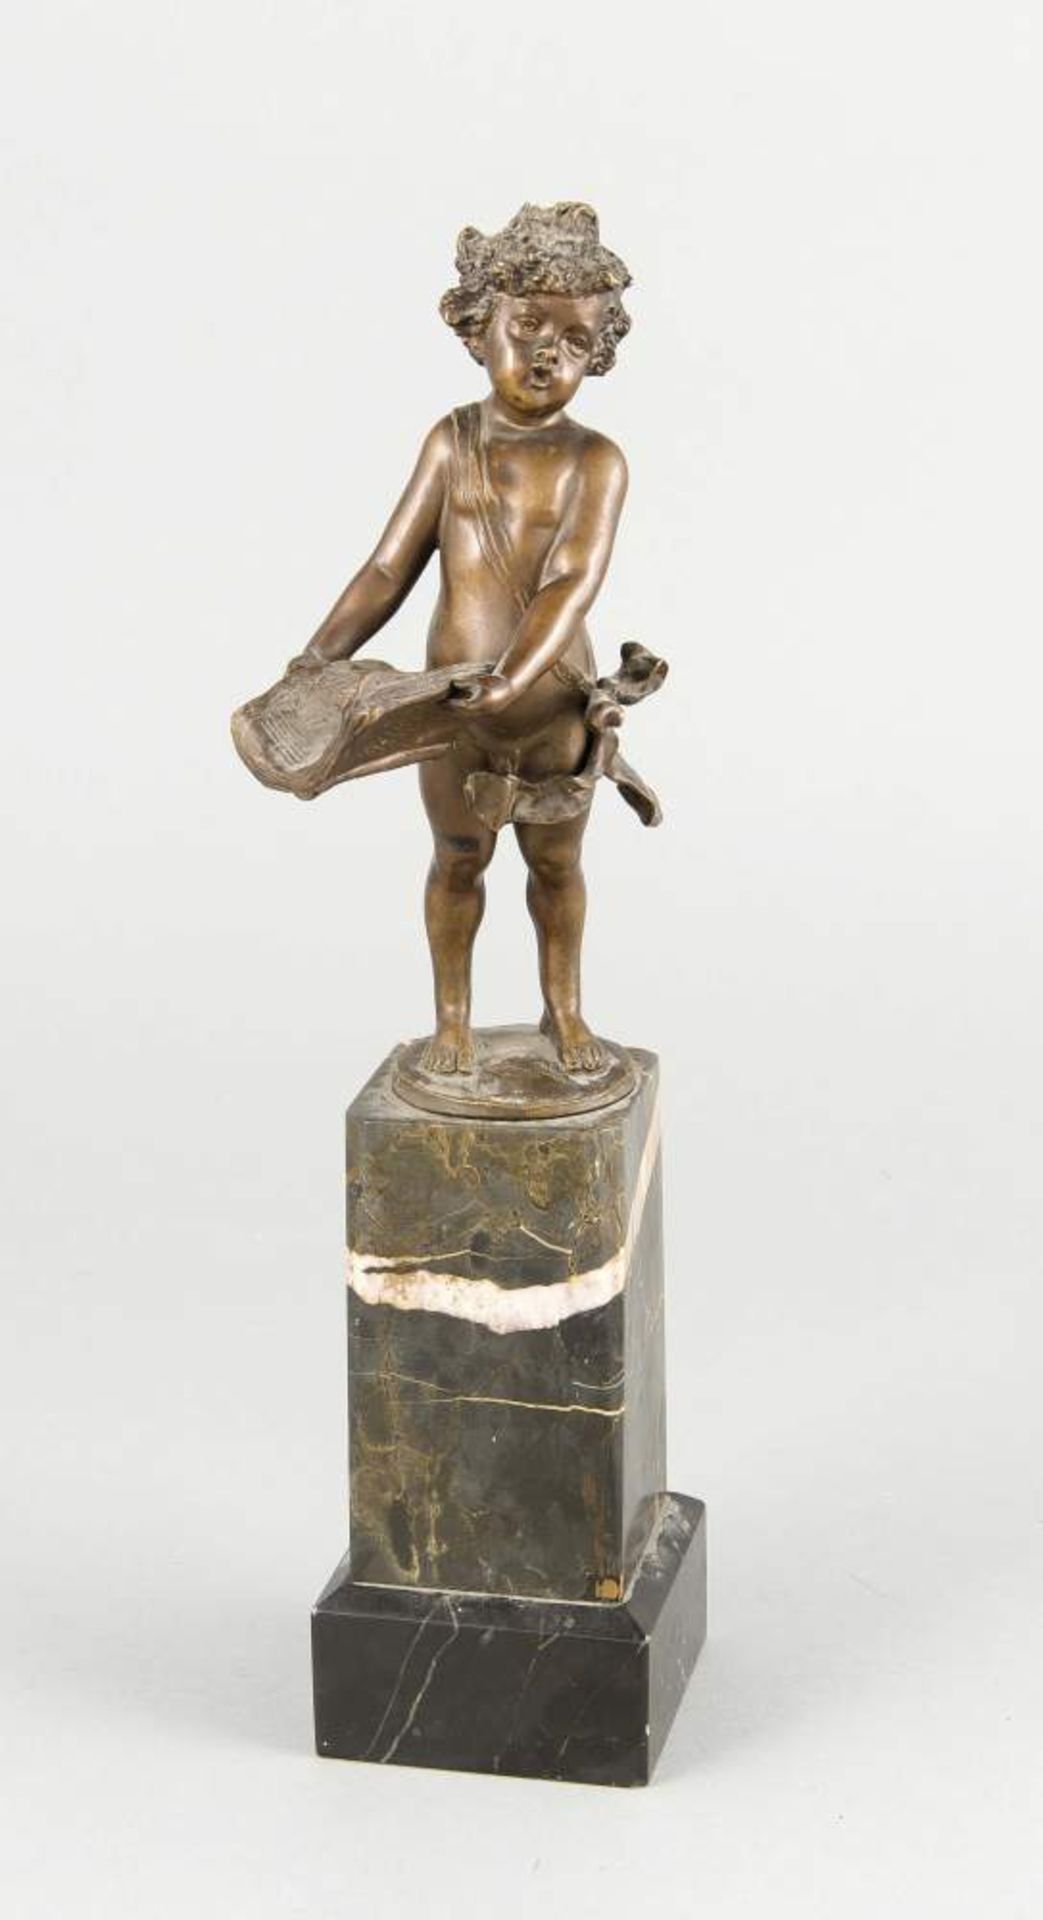 Anonymer Bildhauer d. 19. Jh., singender Knabe mit Gesangsbuch, braun patinierte Bronzeauf hohem